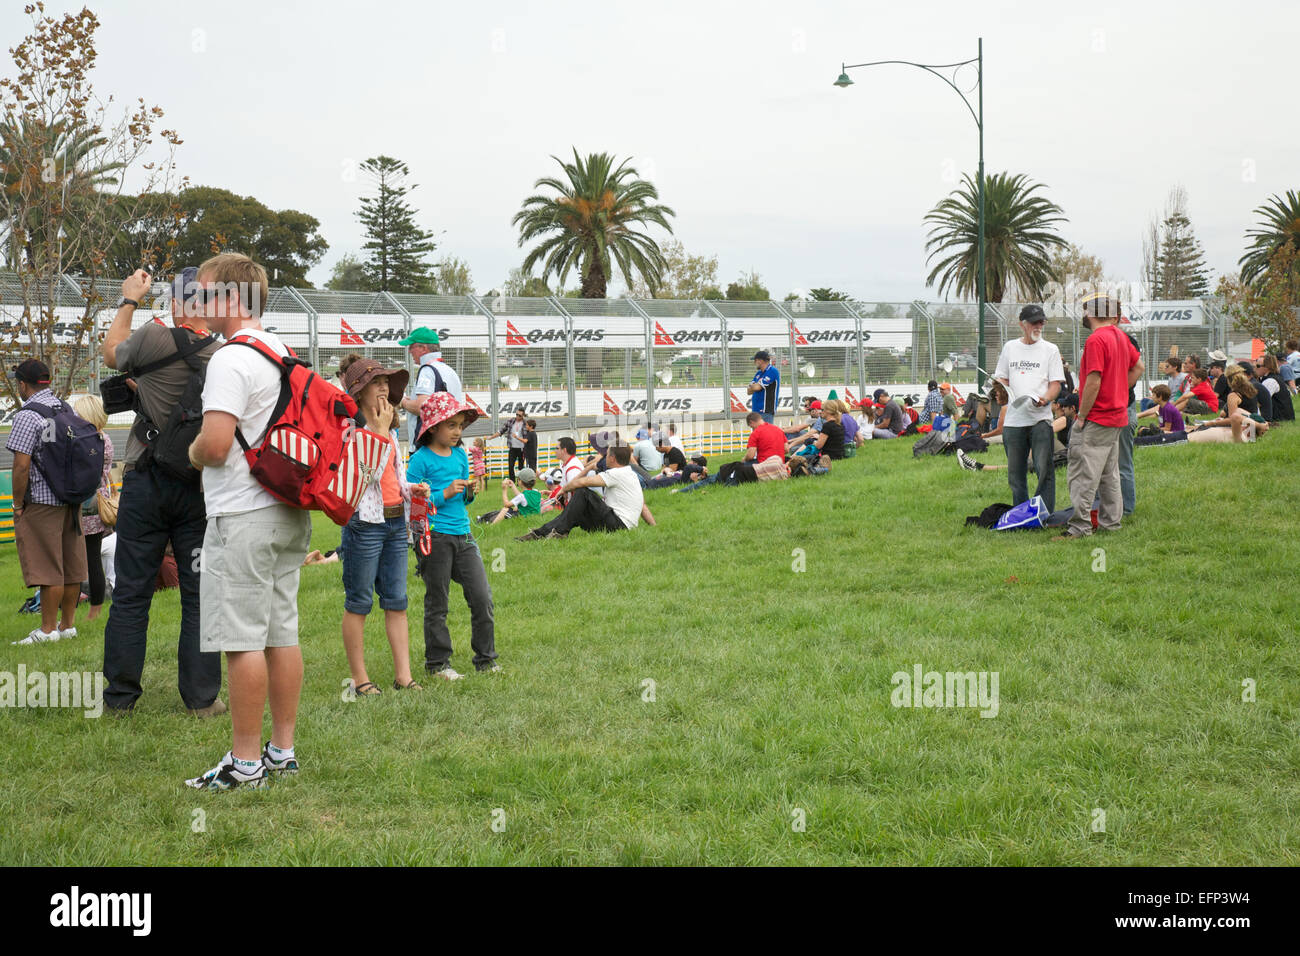 Formel 1 Grand Prix in Melbourne jährliche Formel Eins Rennen Event, Australien Stockfoto